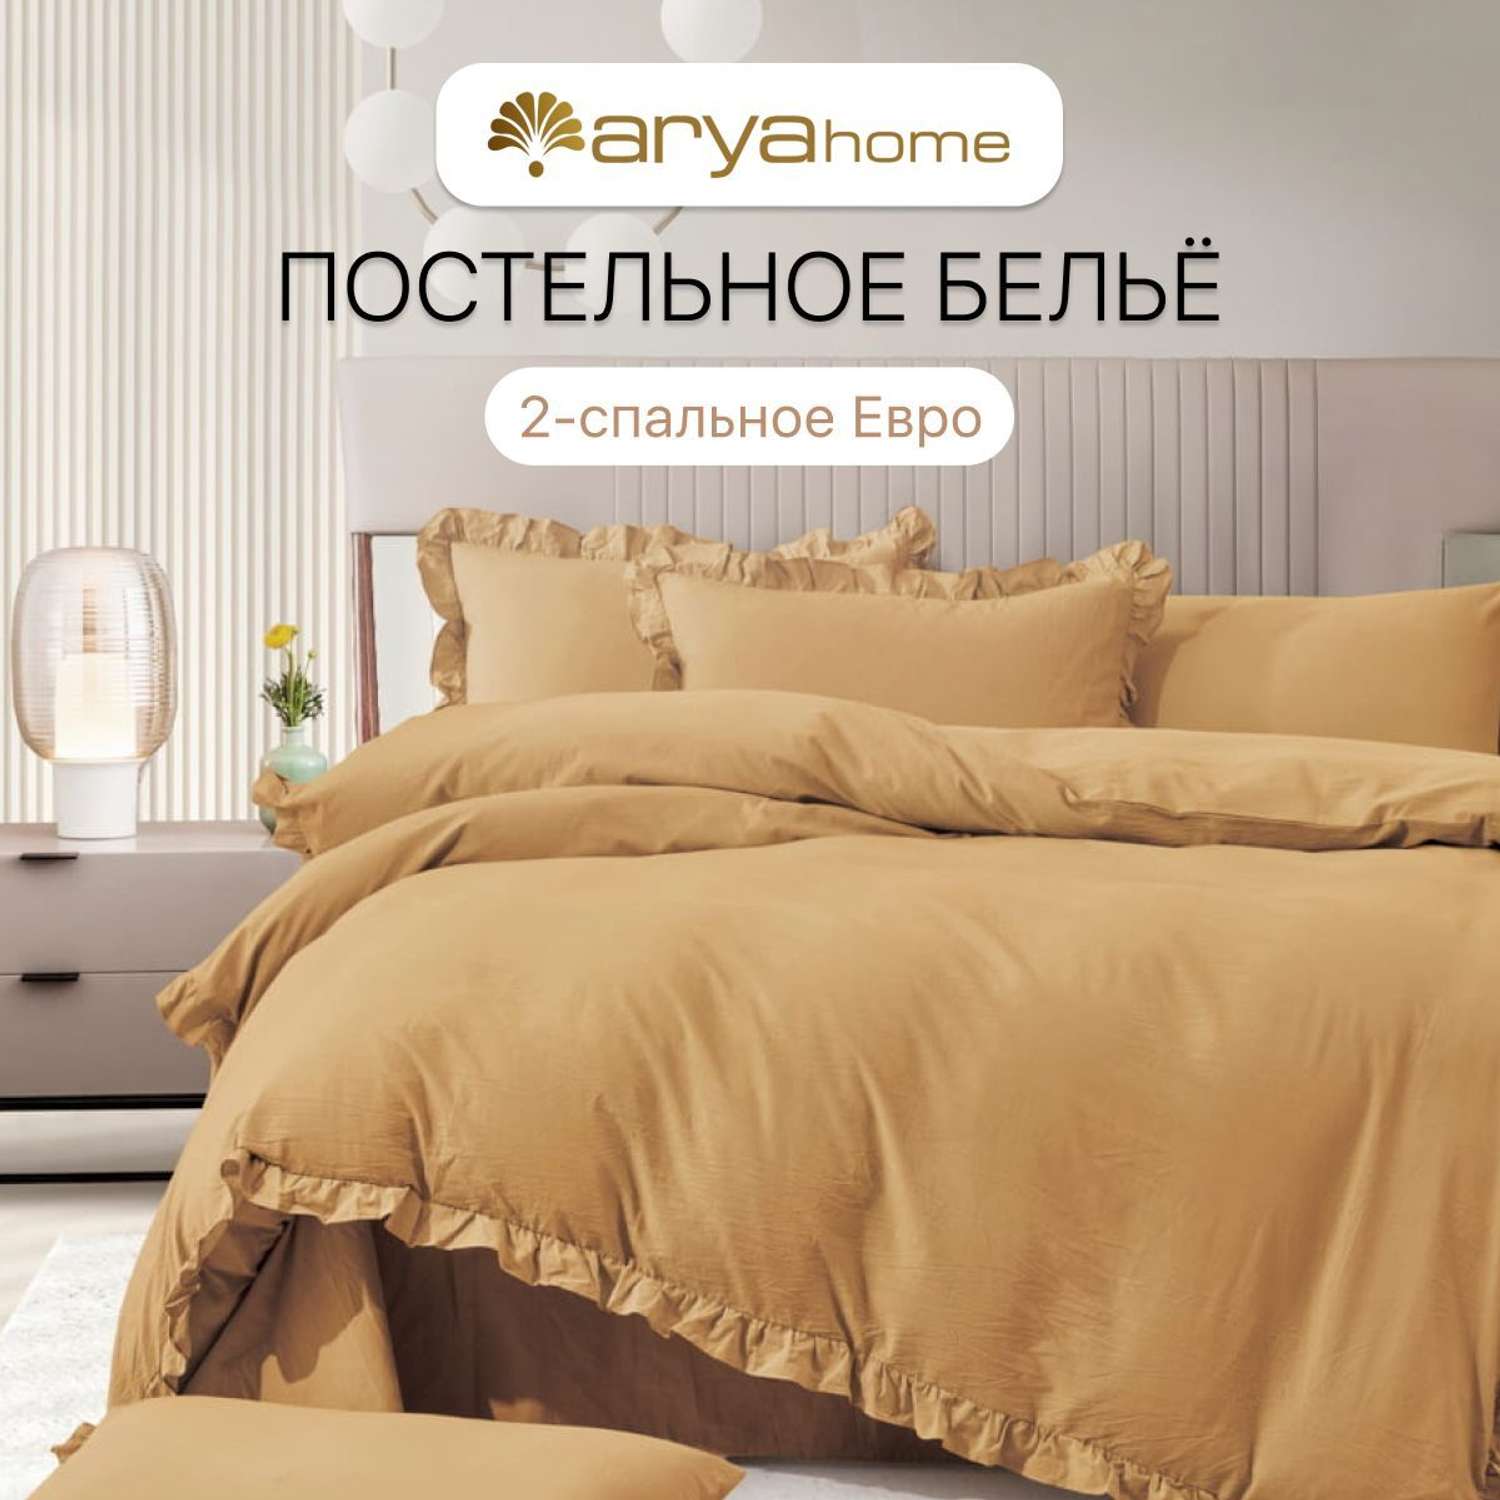 Постельное белье Arya Home Collection 2 спальное евро комплект 200x220 Valensiya сатин 4 наволочки 50х70 с евро простыней - фото 1